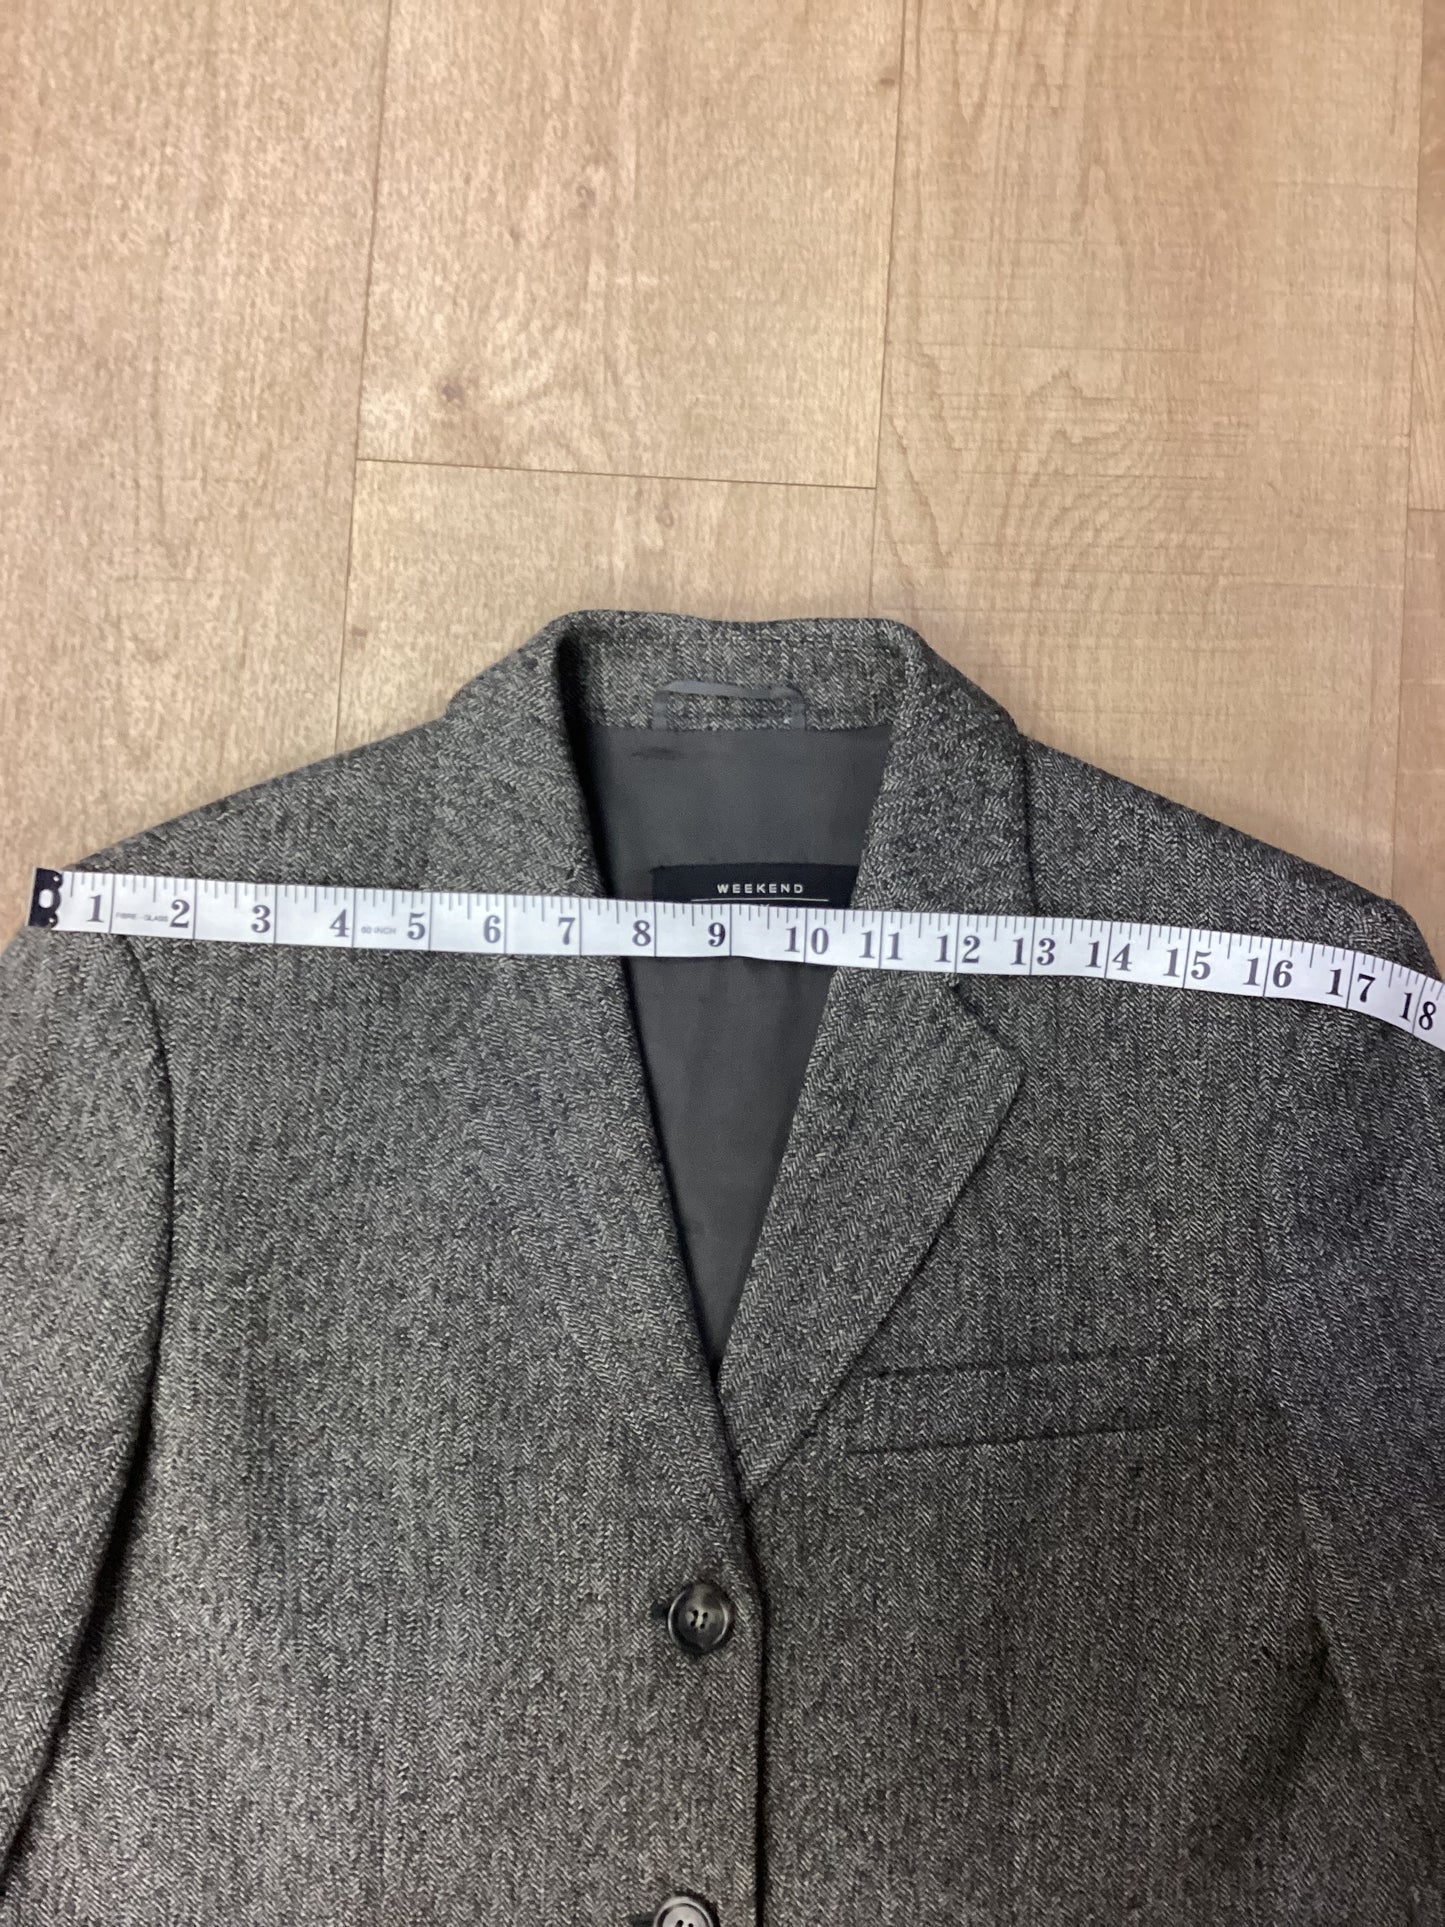 Weekend Max Mara Grey 70% Wool Skirt Suit Size 12/14